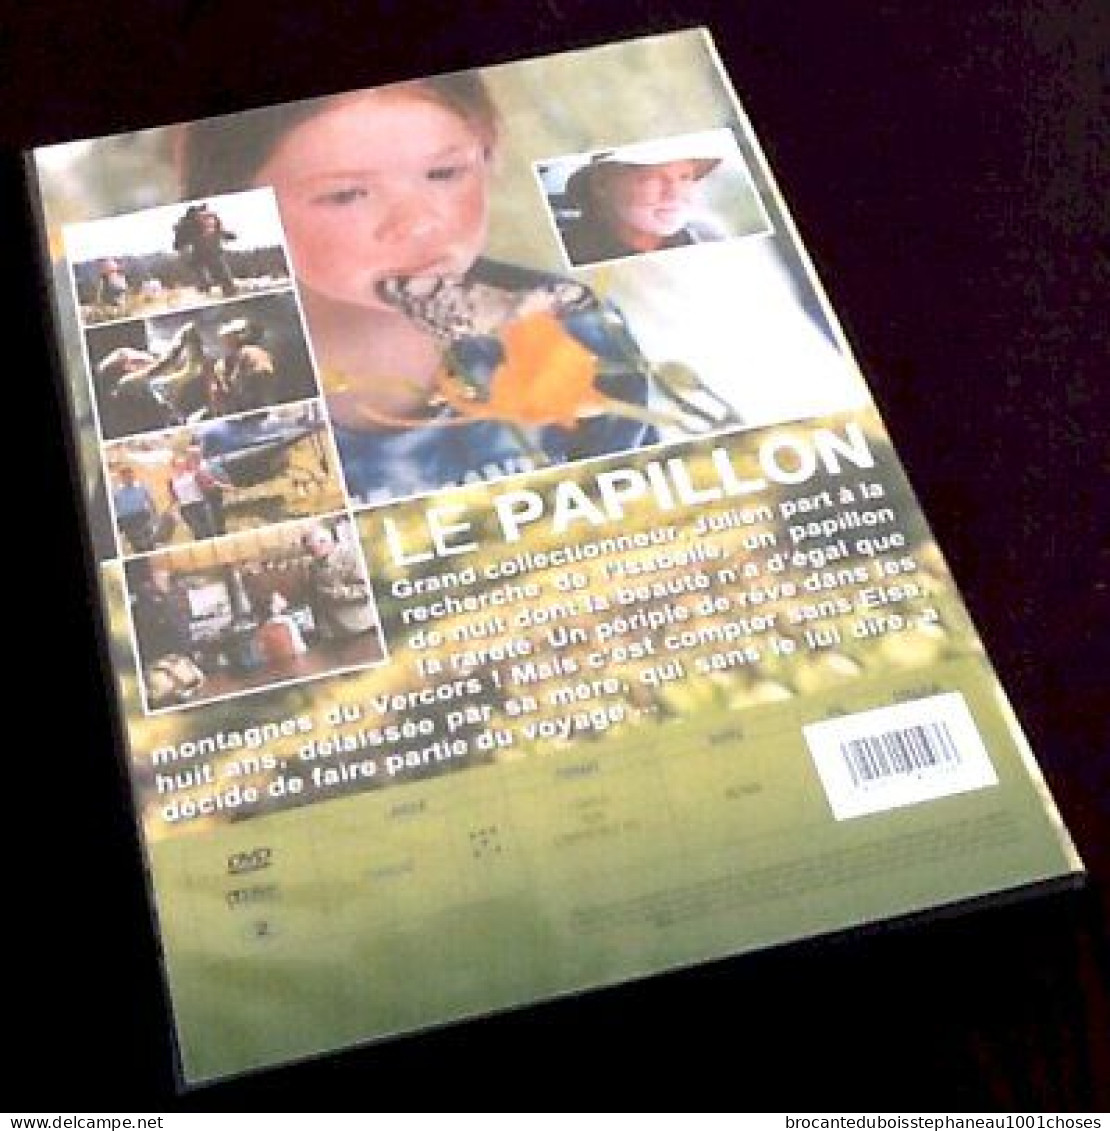 DVD Le Papillon Un Film De Philippe Muyl  Avec Michel Serrault Et Claire Bouanich (2015) - Komedie